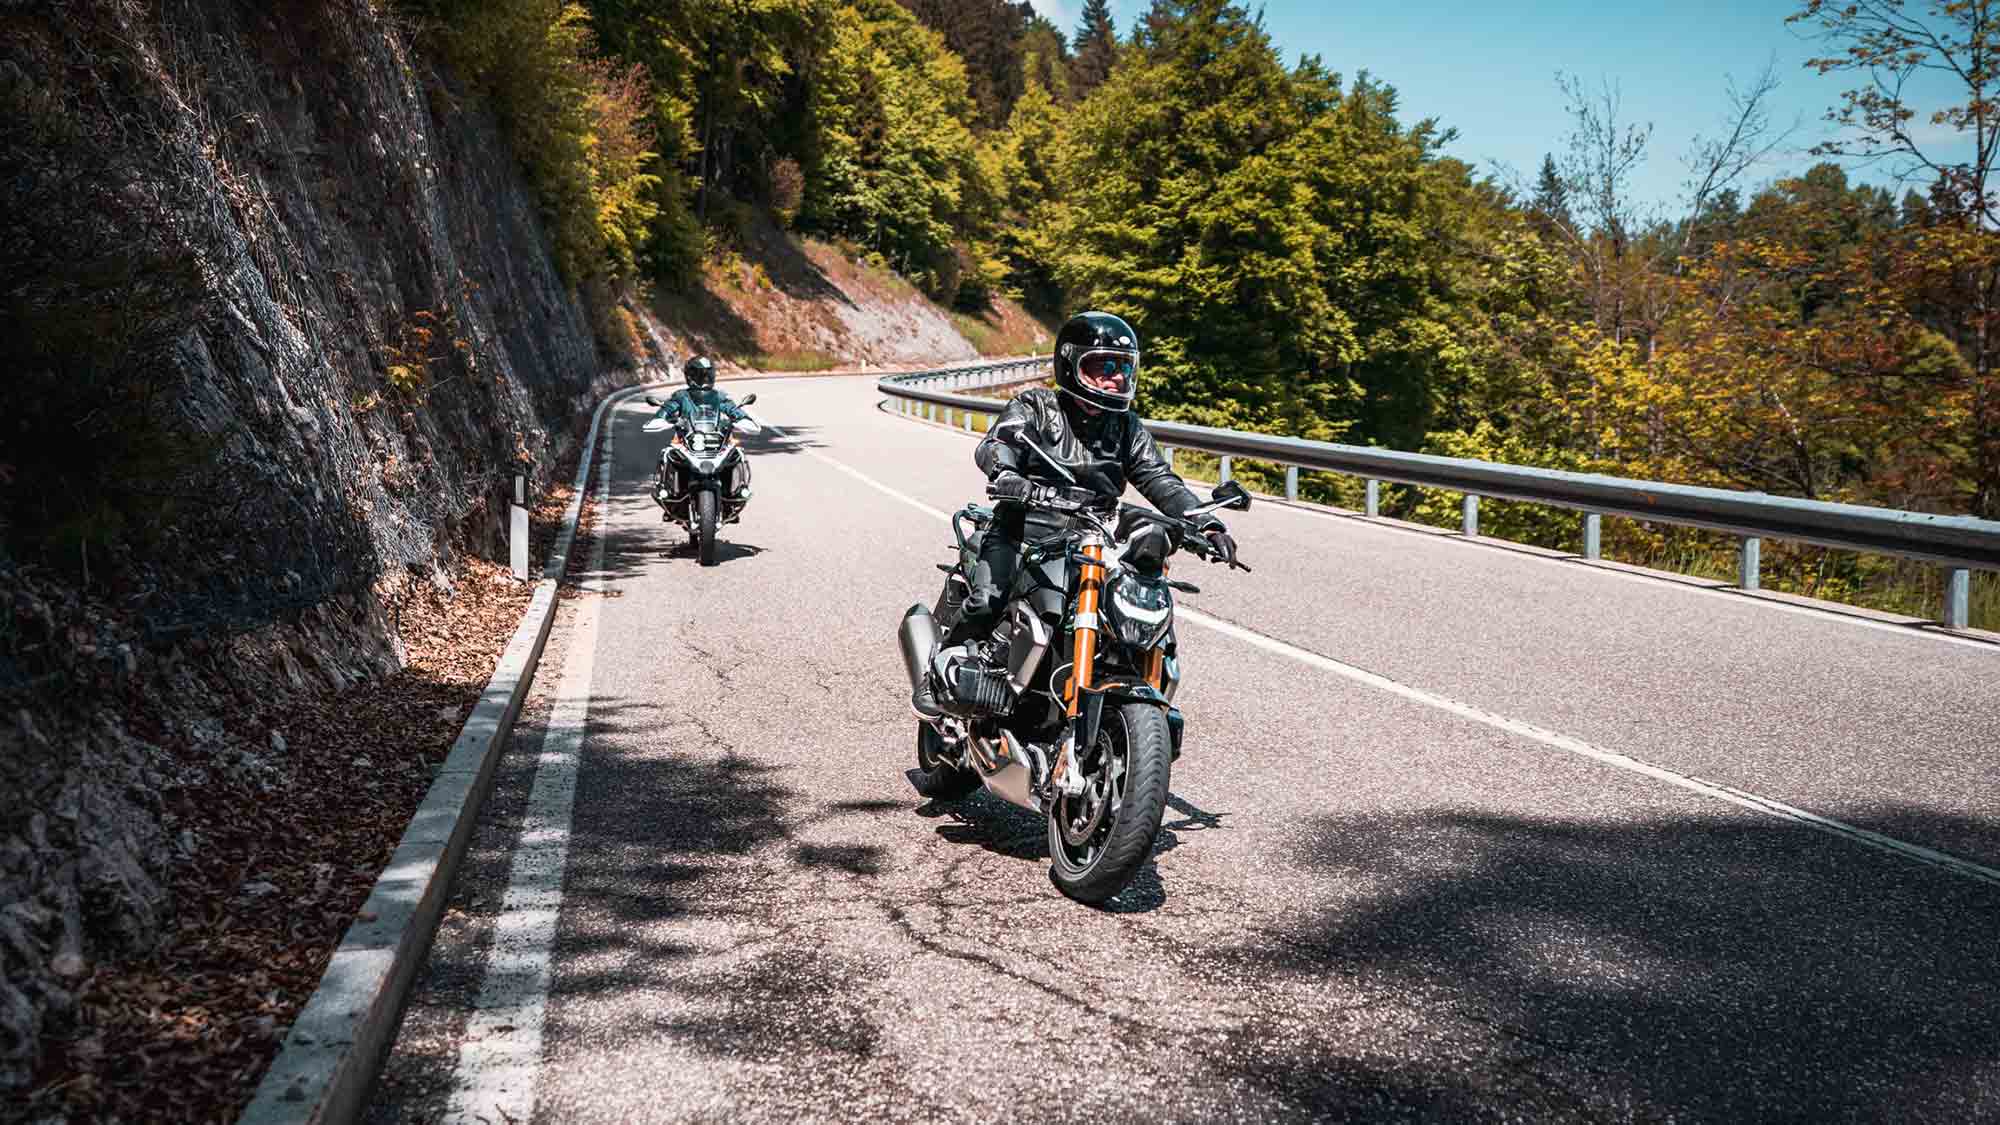 Das Beste kommt zum Schluss: neues Motorradprogramm »Last Ride of the Season« zum goldenen Saisonabschluss